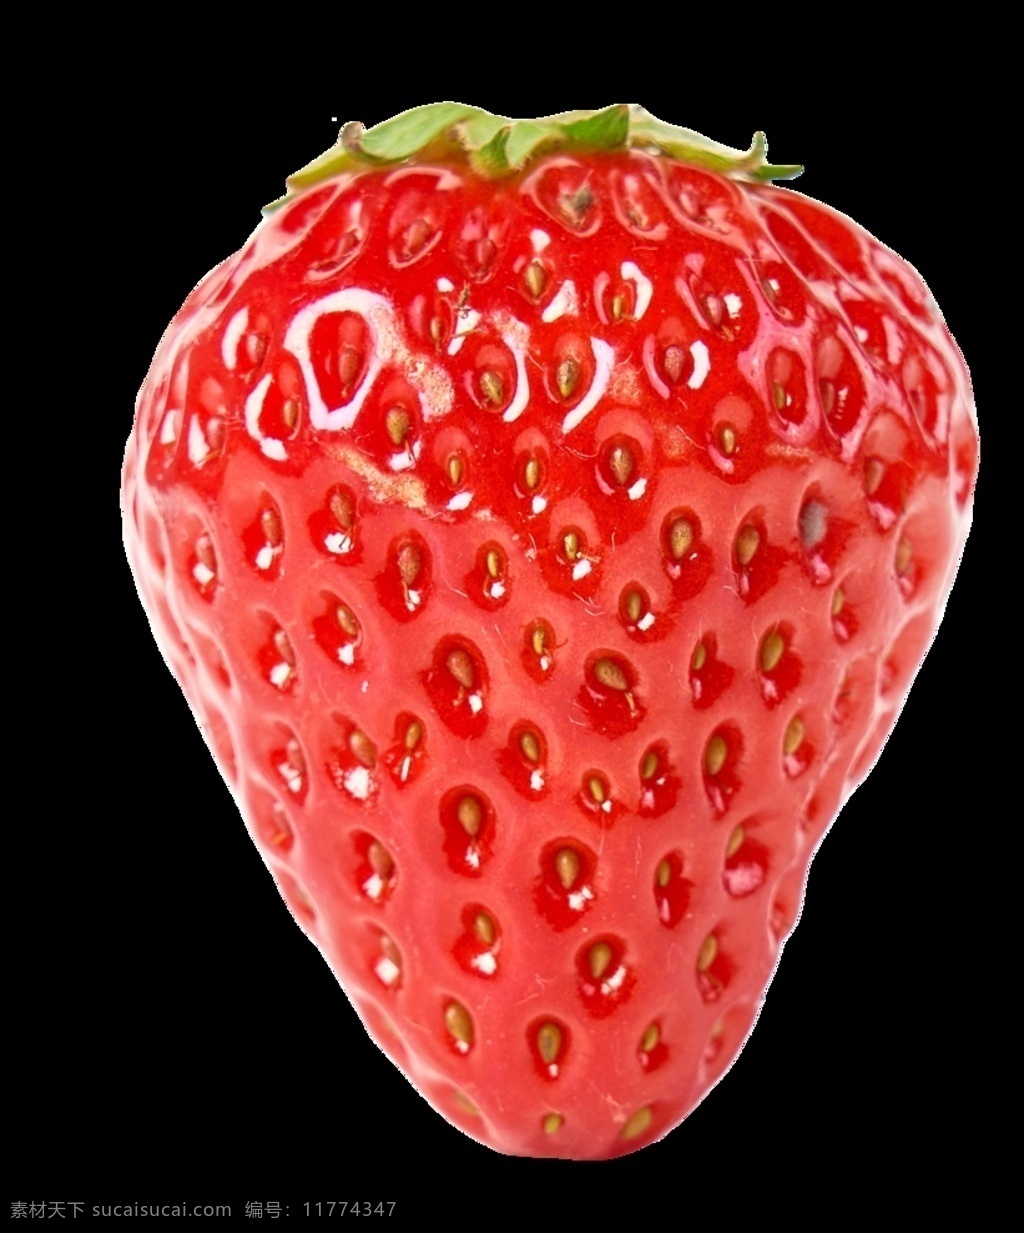 草莓 免扣 格式图片 分层 清晰 大图 生活百科 生活用品